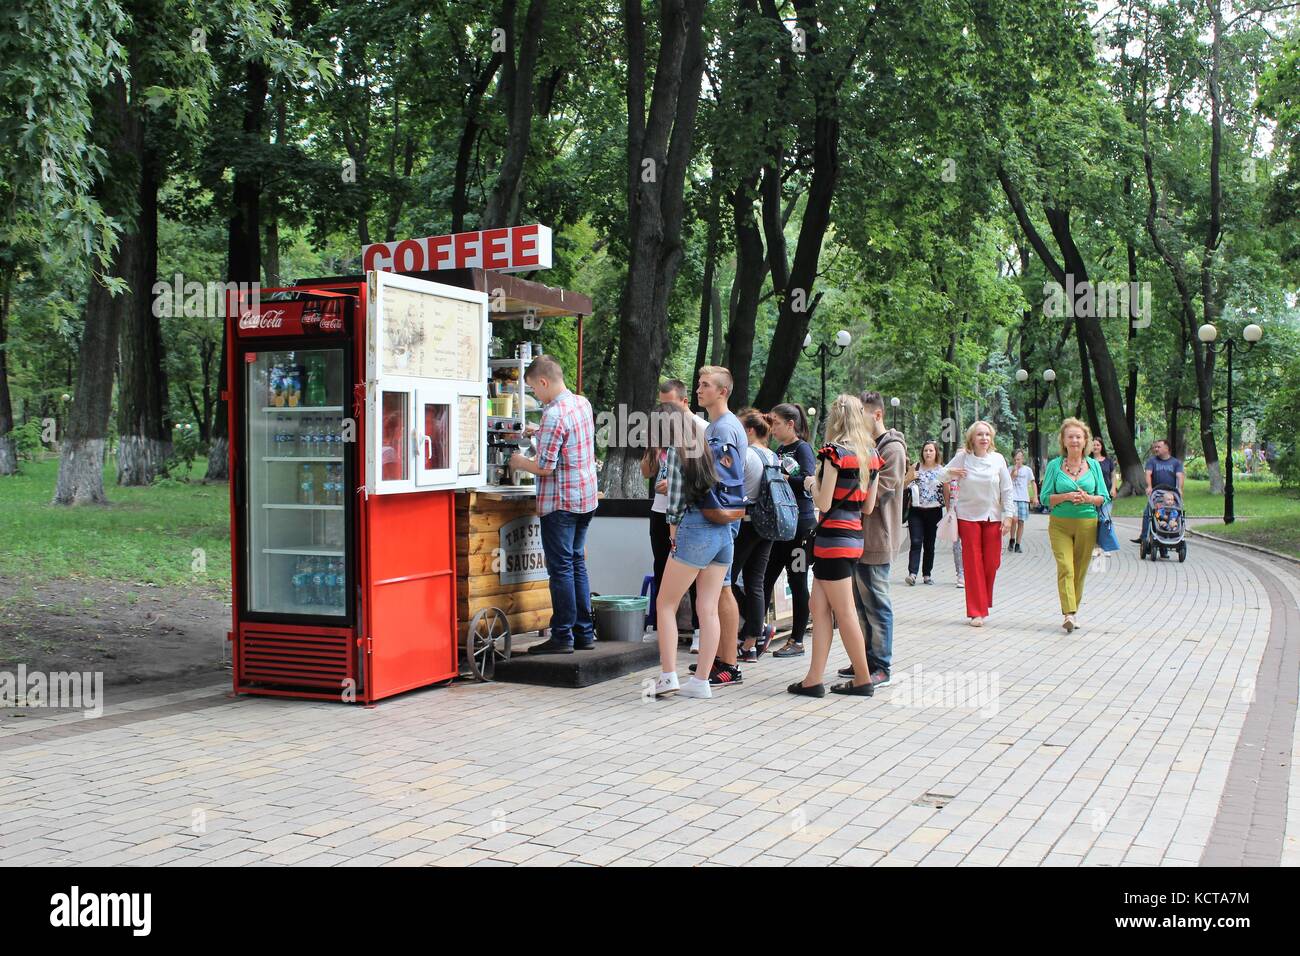 Stand café à mariinskyi park kiev ukraine Banque D'Images